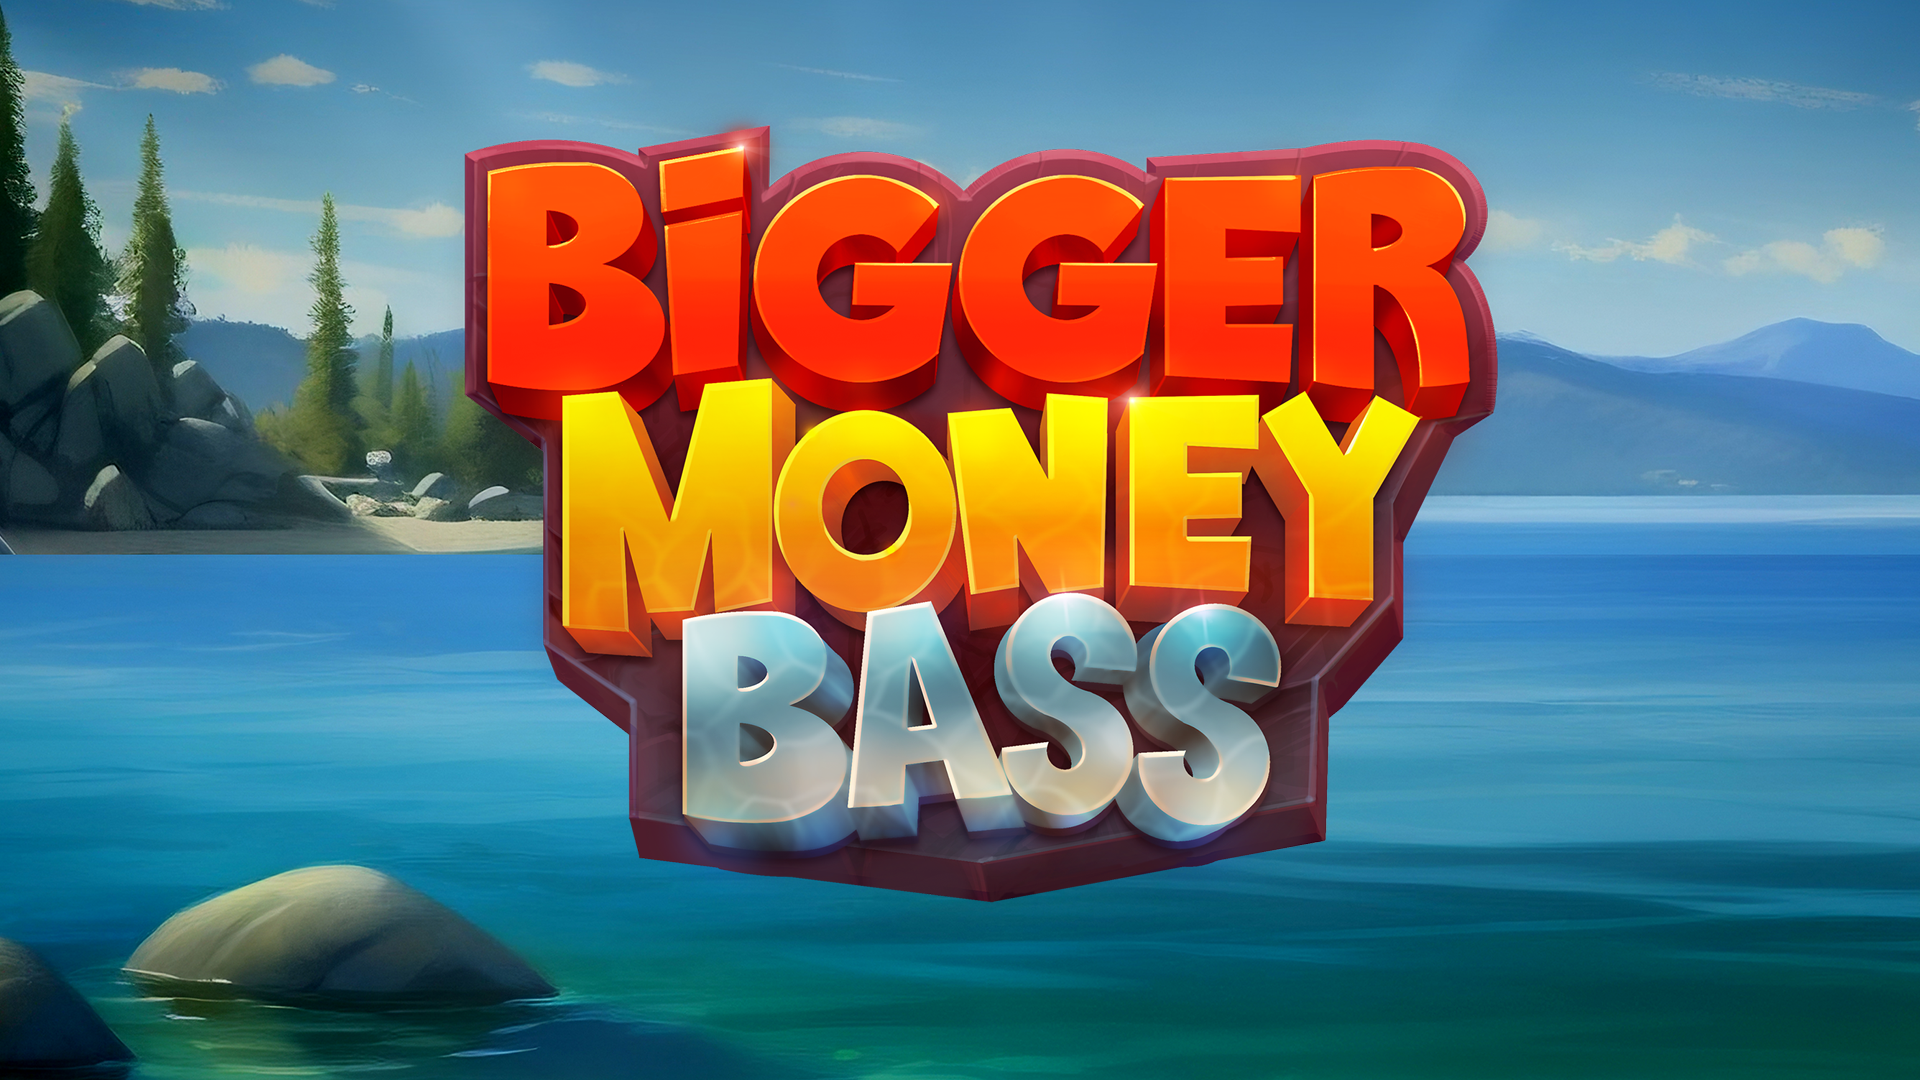 Bigger Money Bass